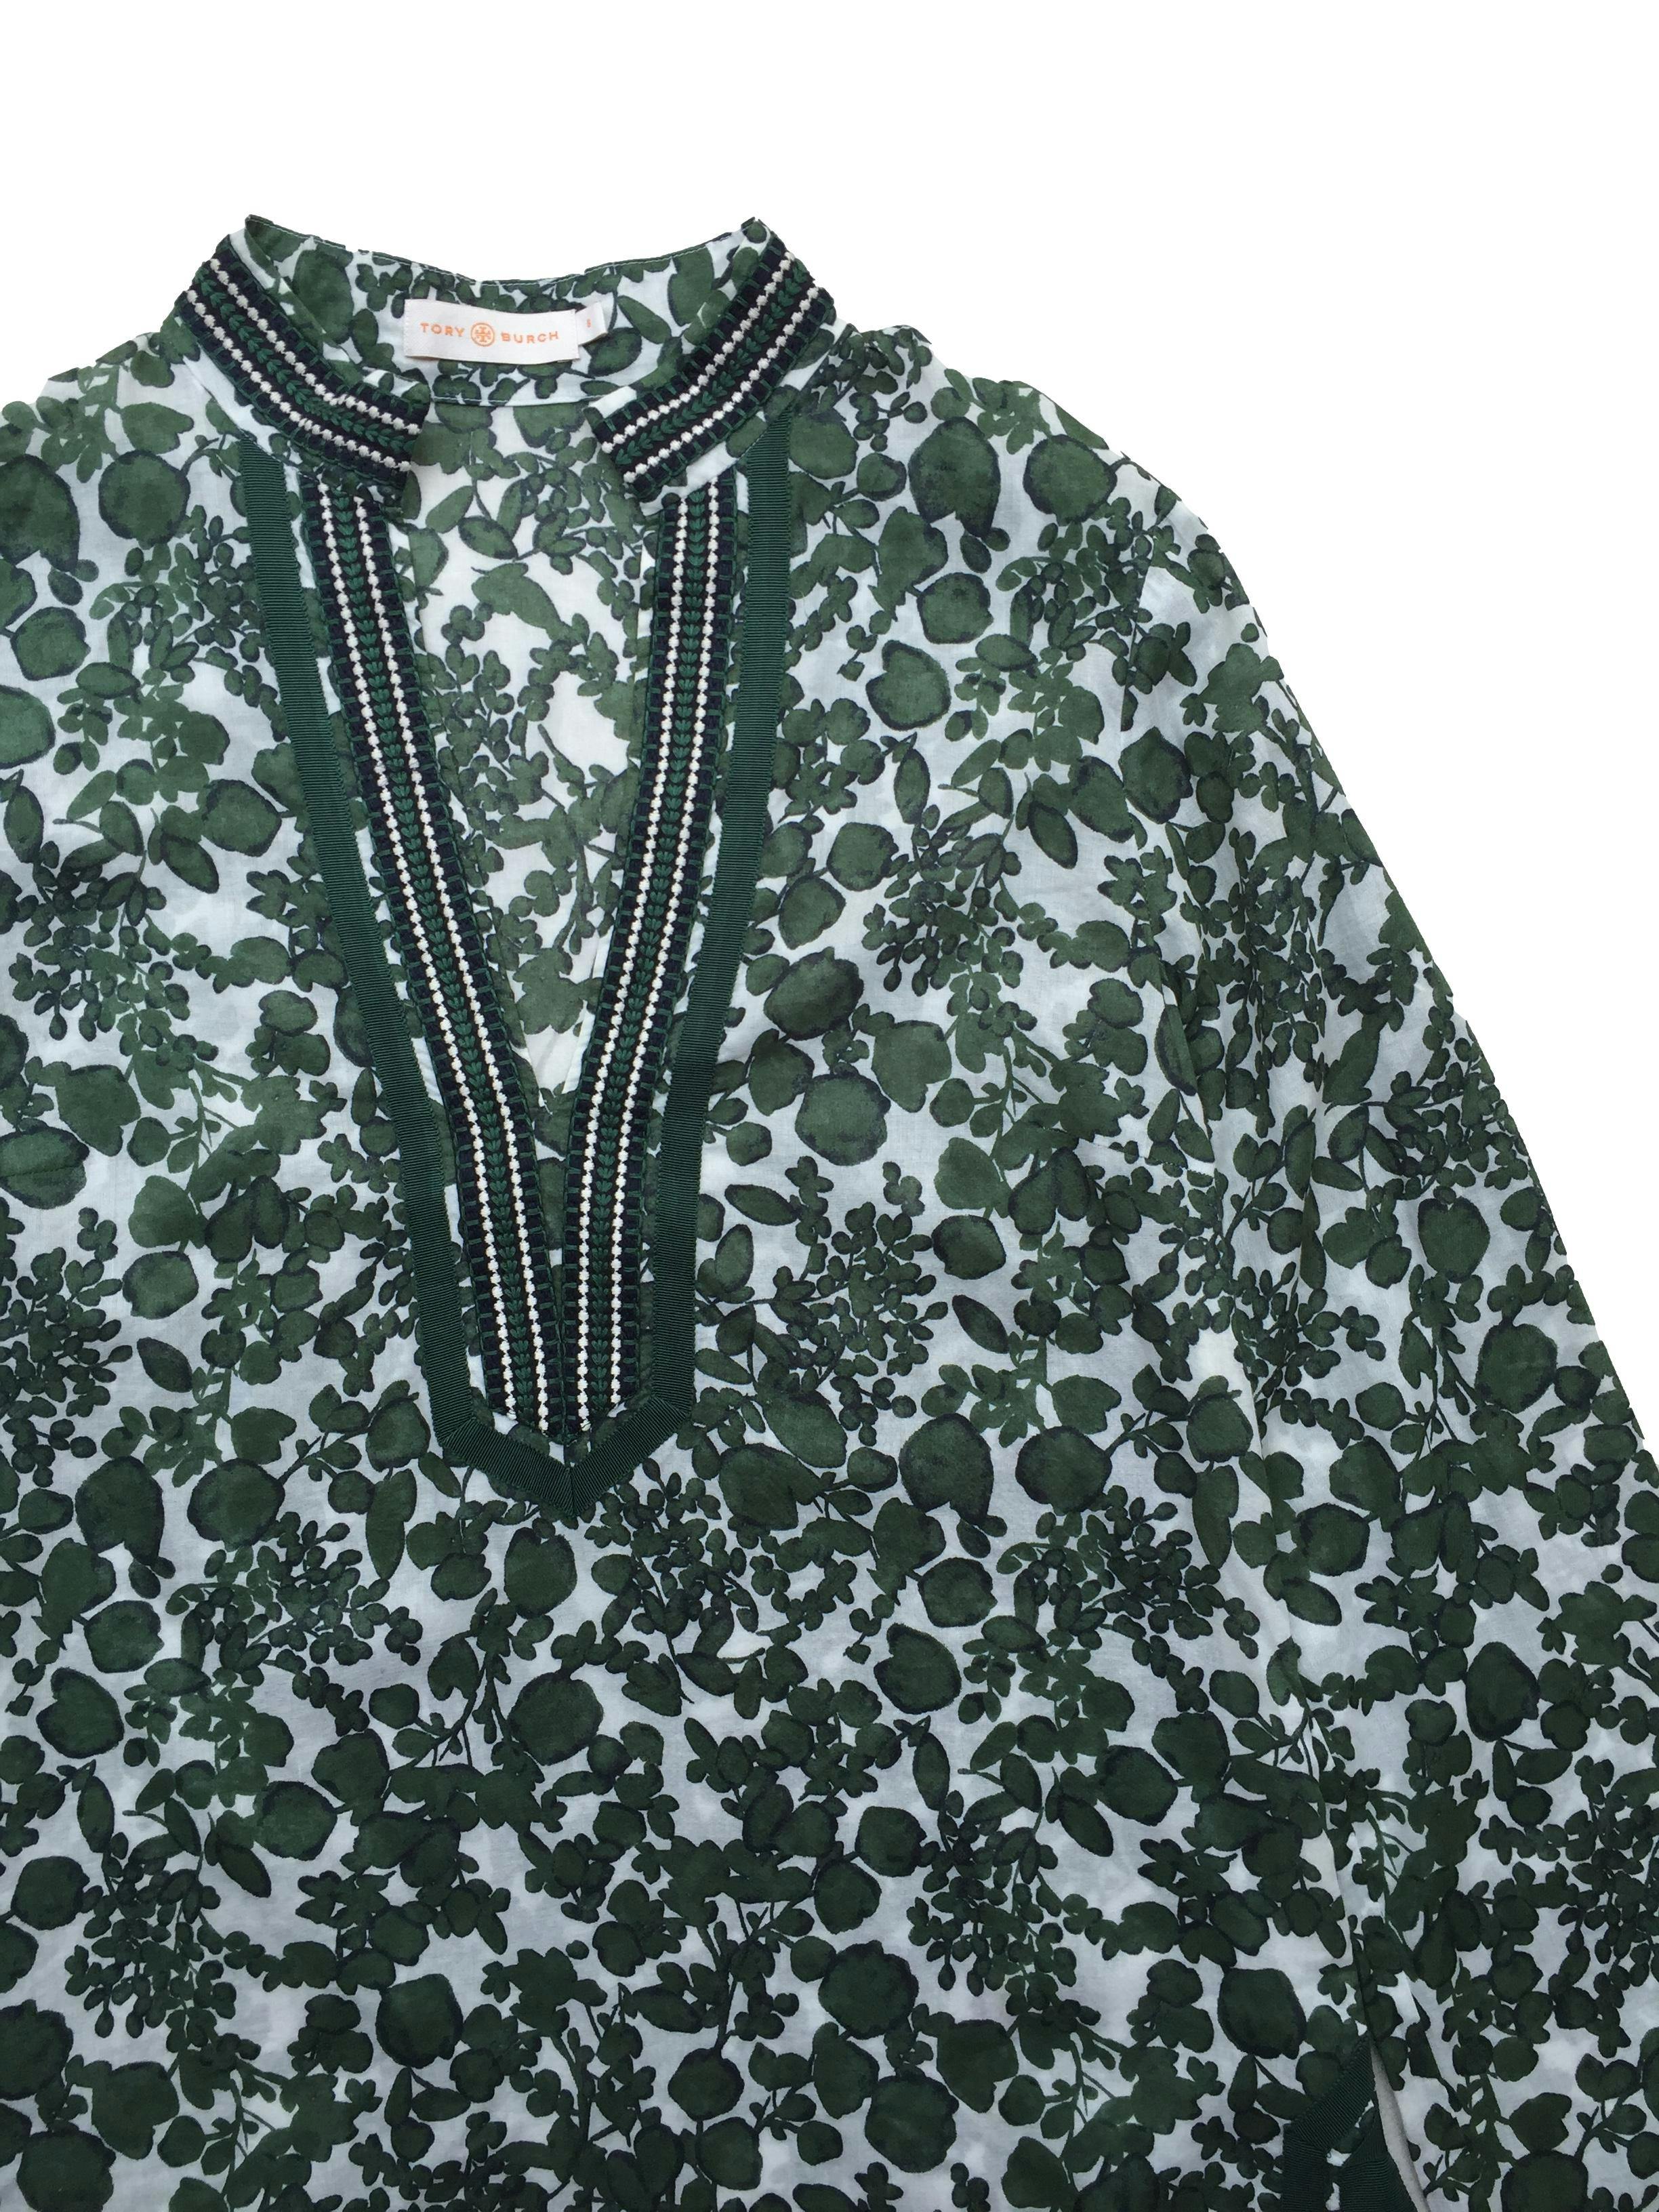 Blusa Tori Burch, 100% algodón estampado de hojas verdes, bordado en el cuello y puños, aberturas laterales. Busto: 100cm, Largo: 76cm